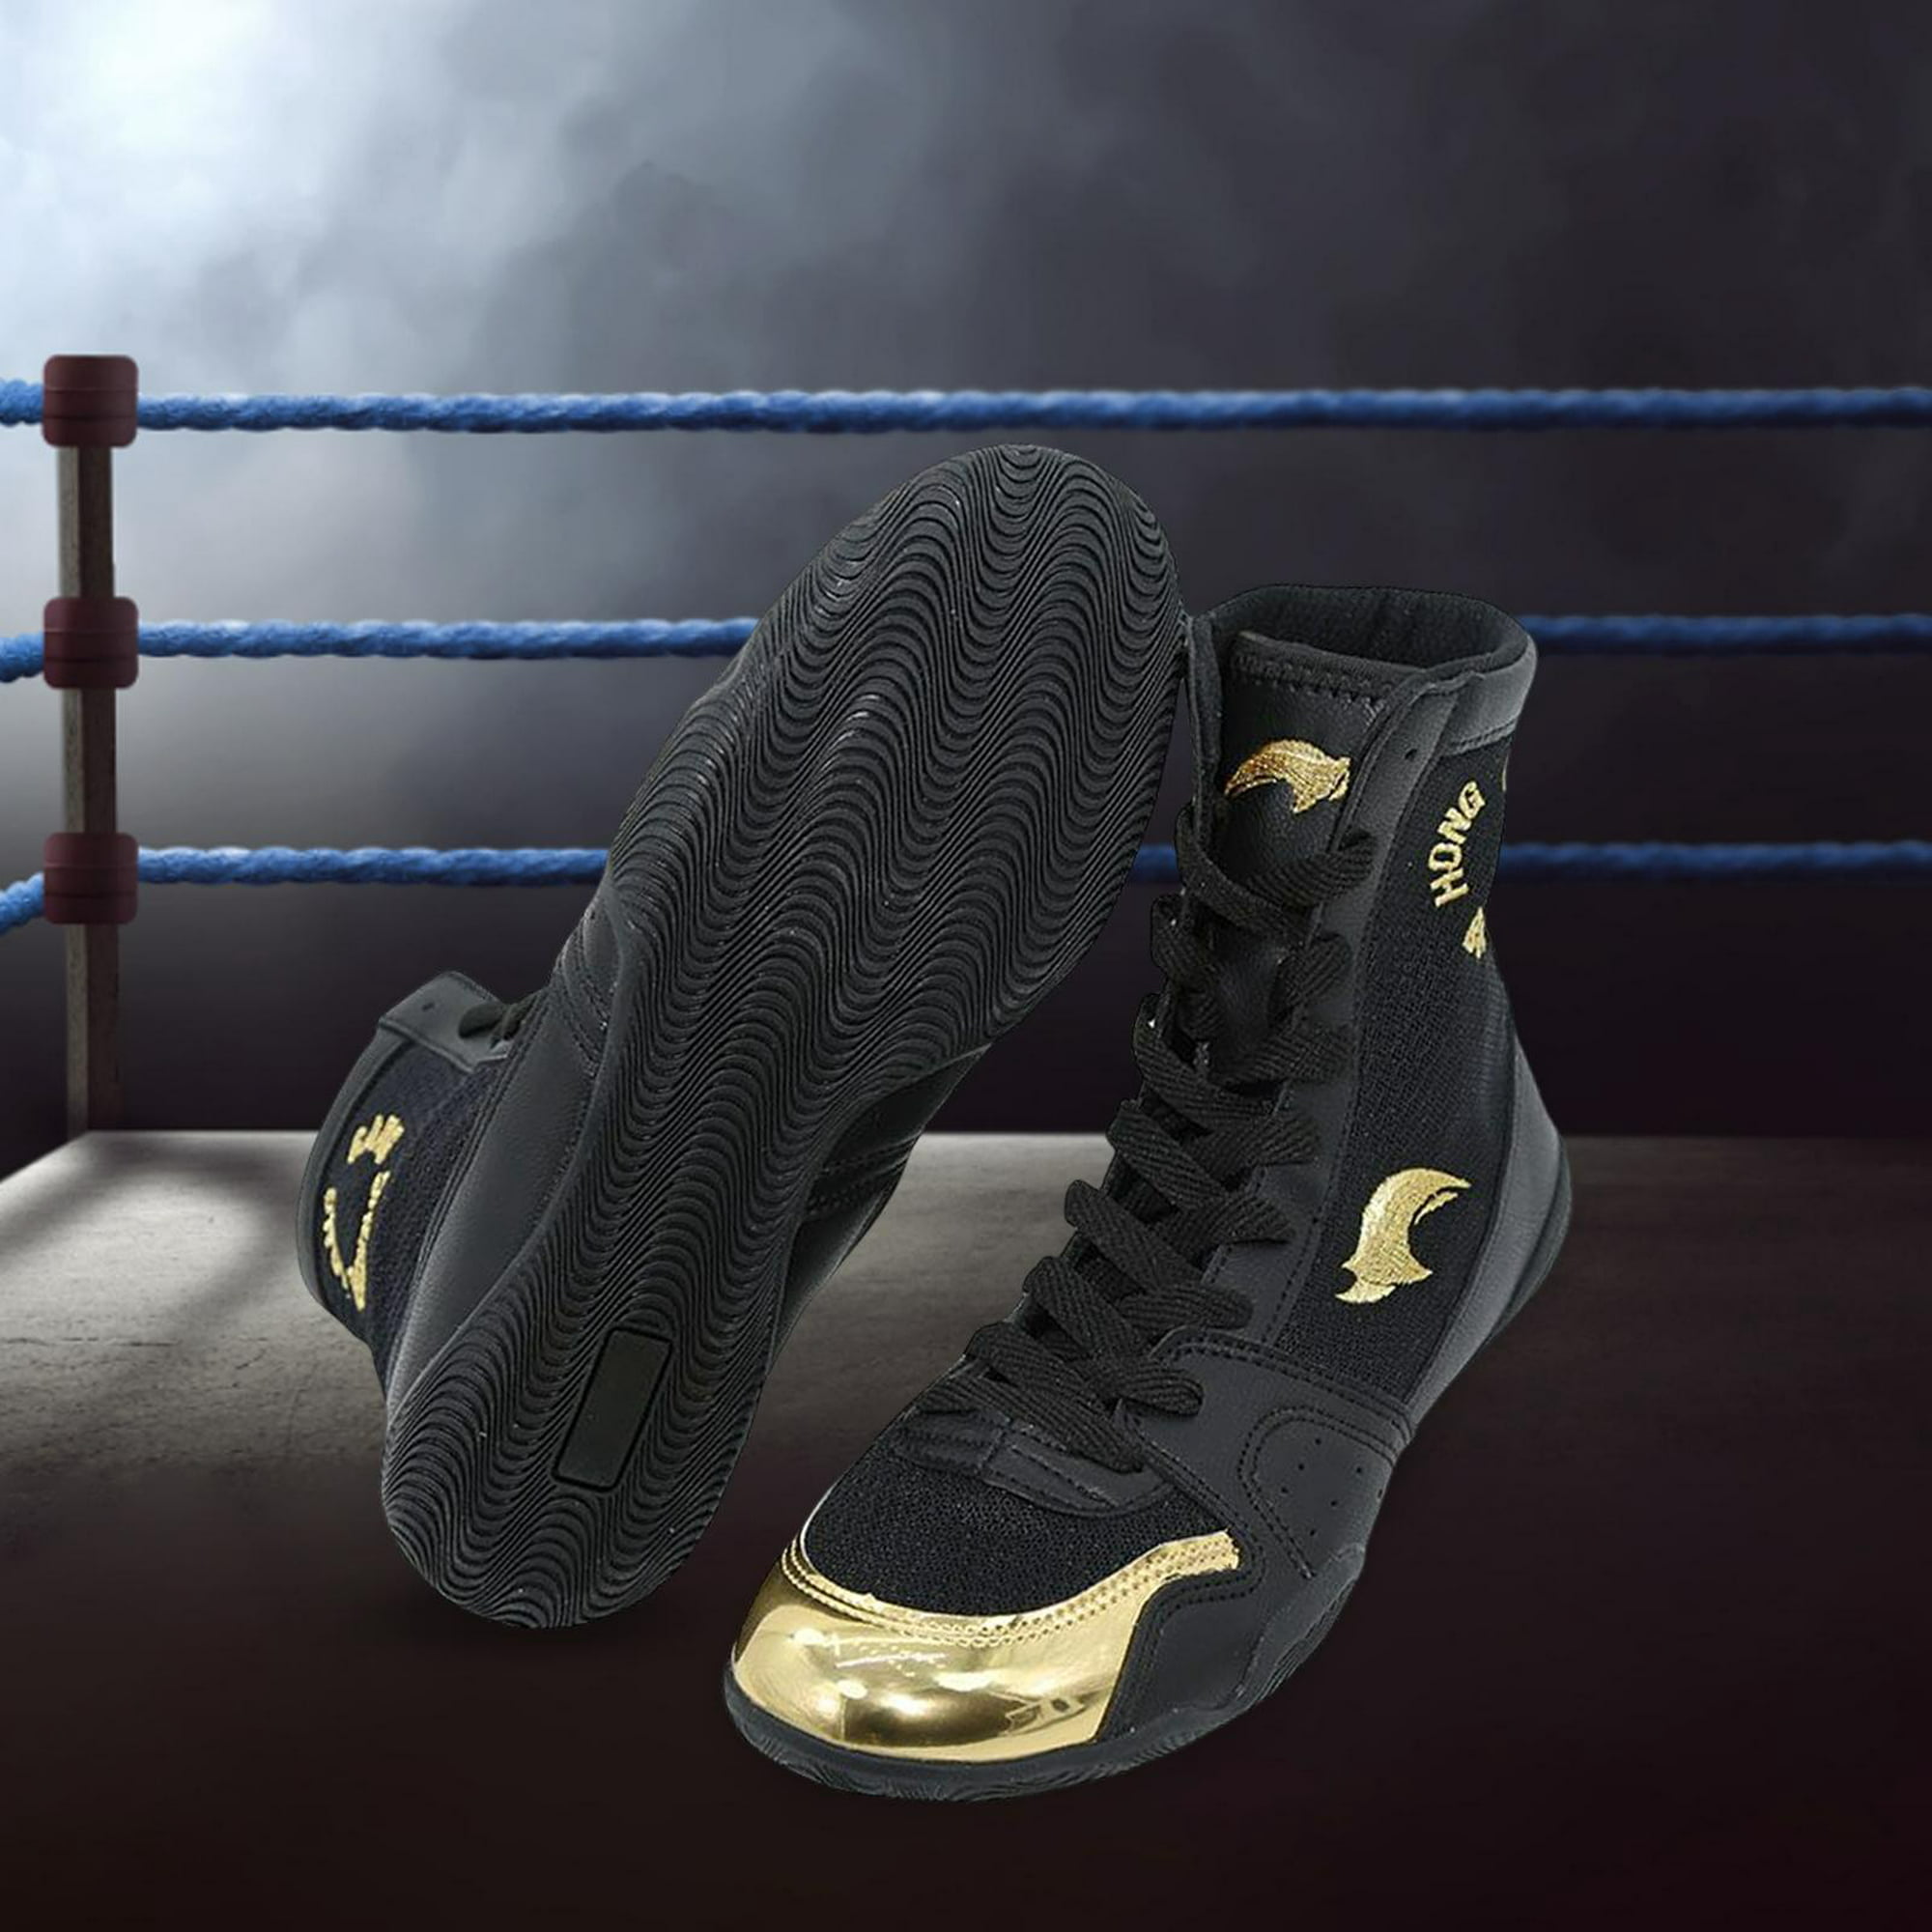 Comprar Botas de Boxeo y Zapatillas online